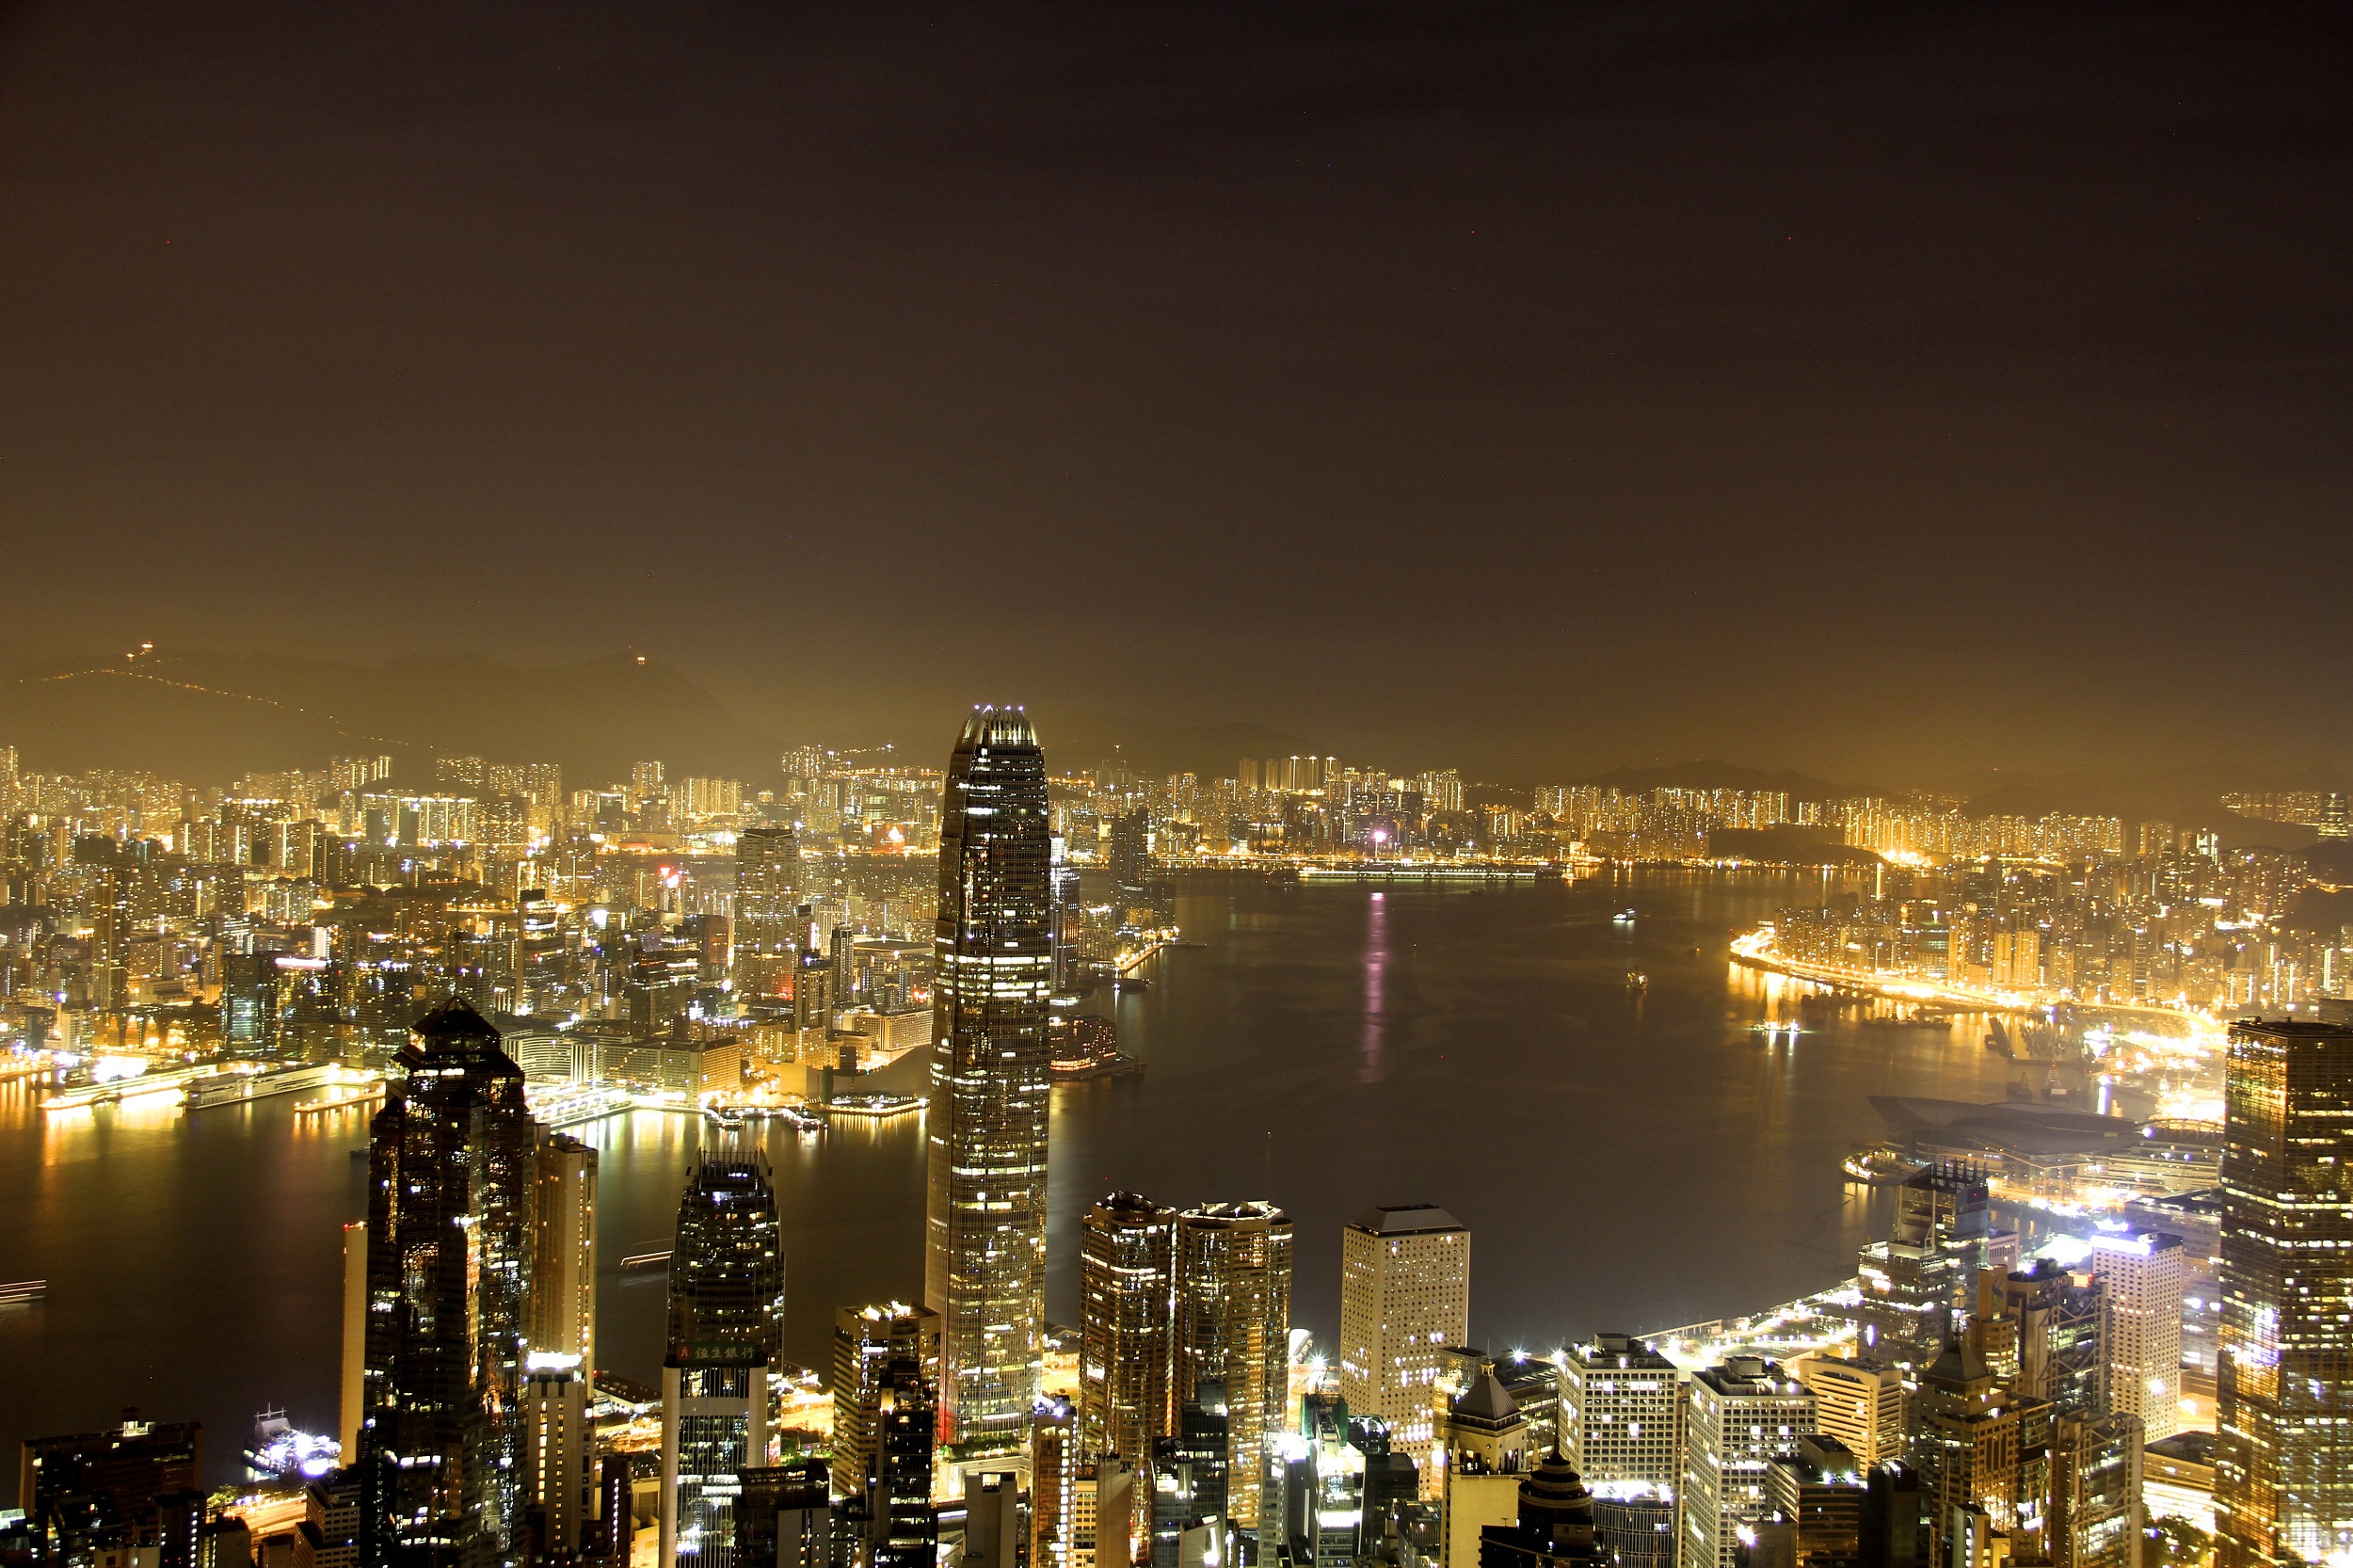 Victoria Peak at night in Hong Kong, China